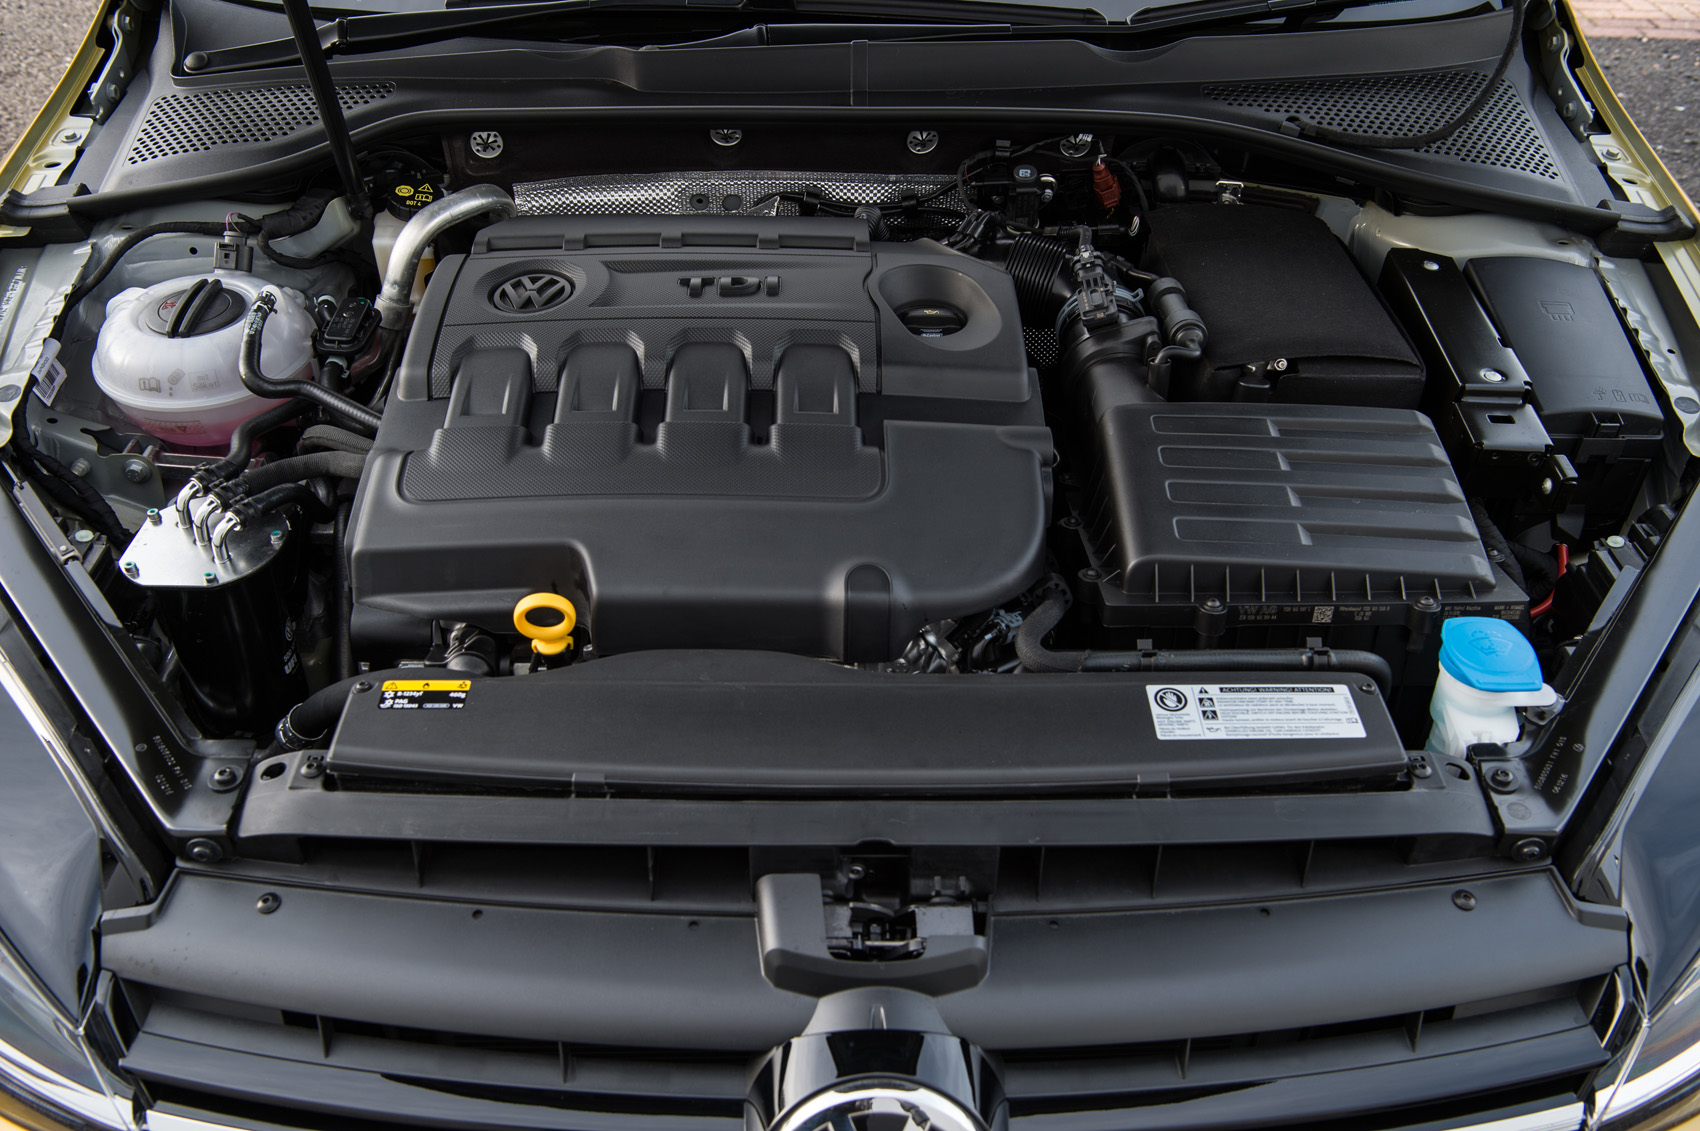 2.0-litre Volkswagen Golf diesel engine